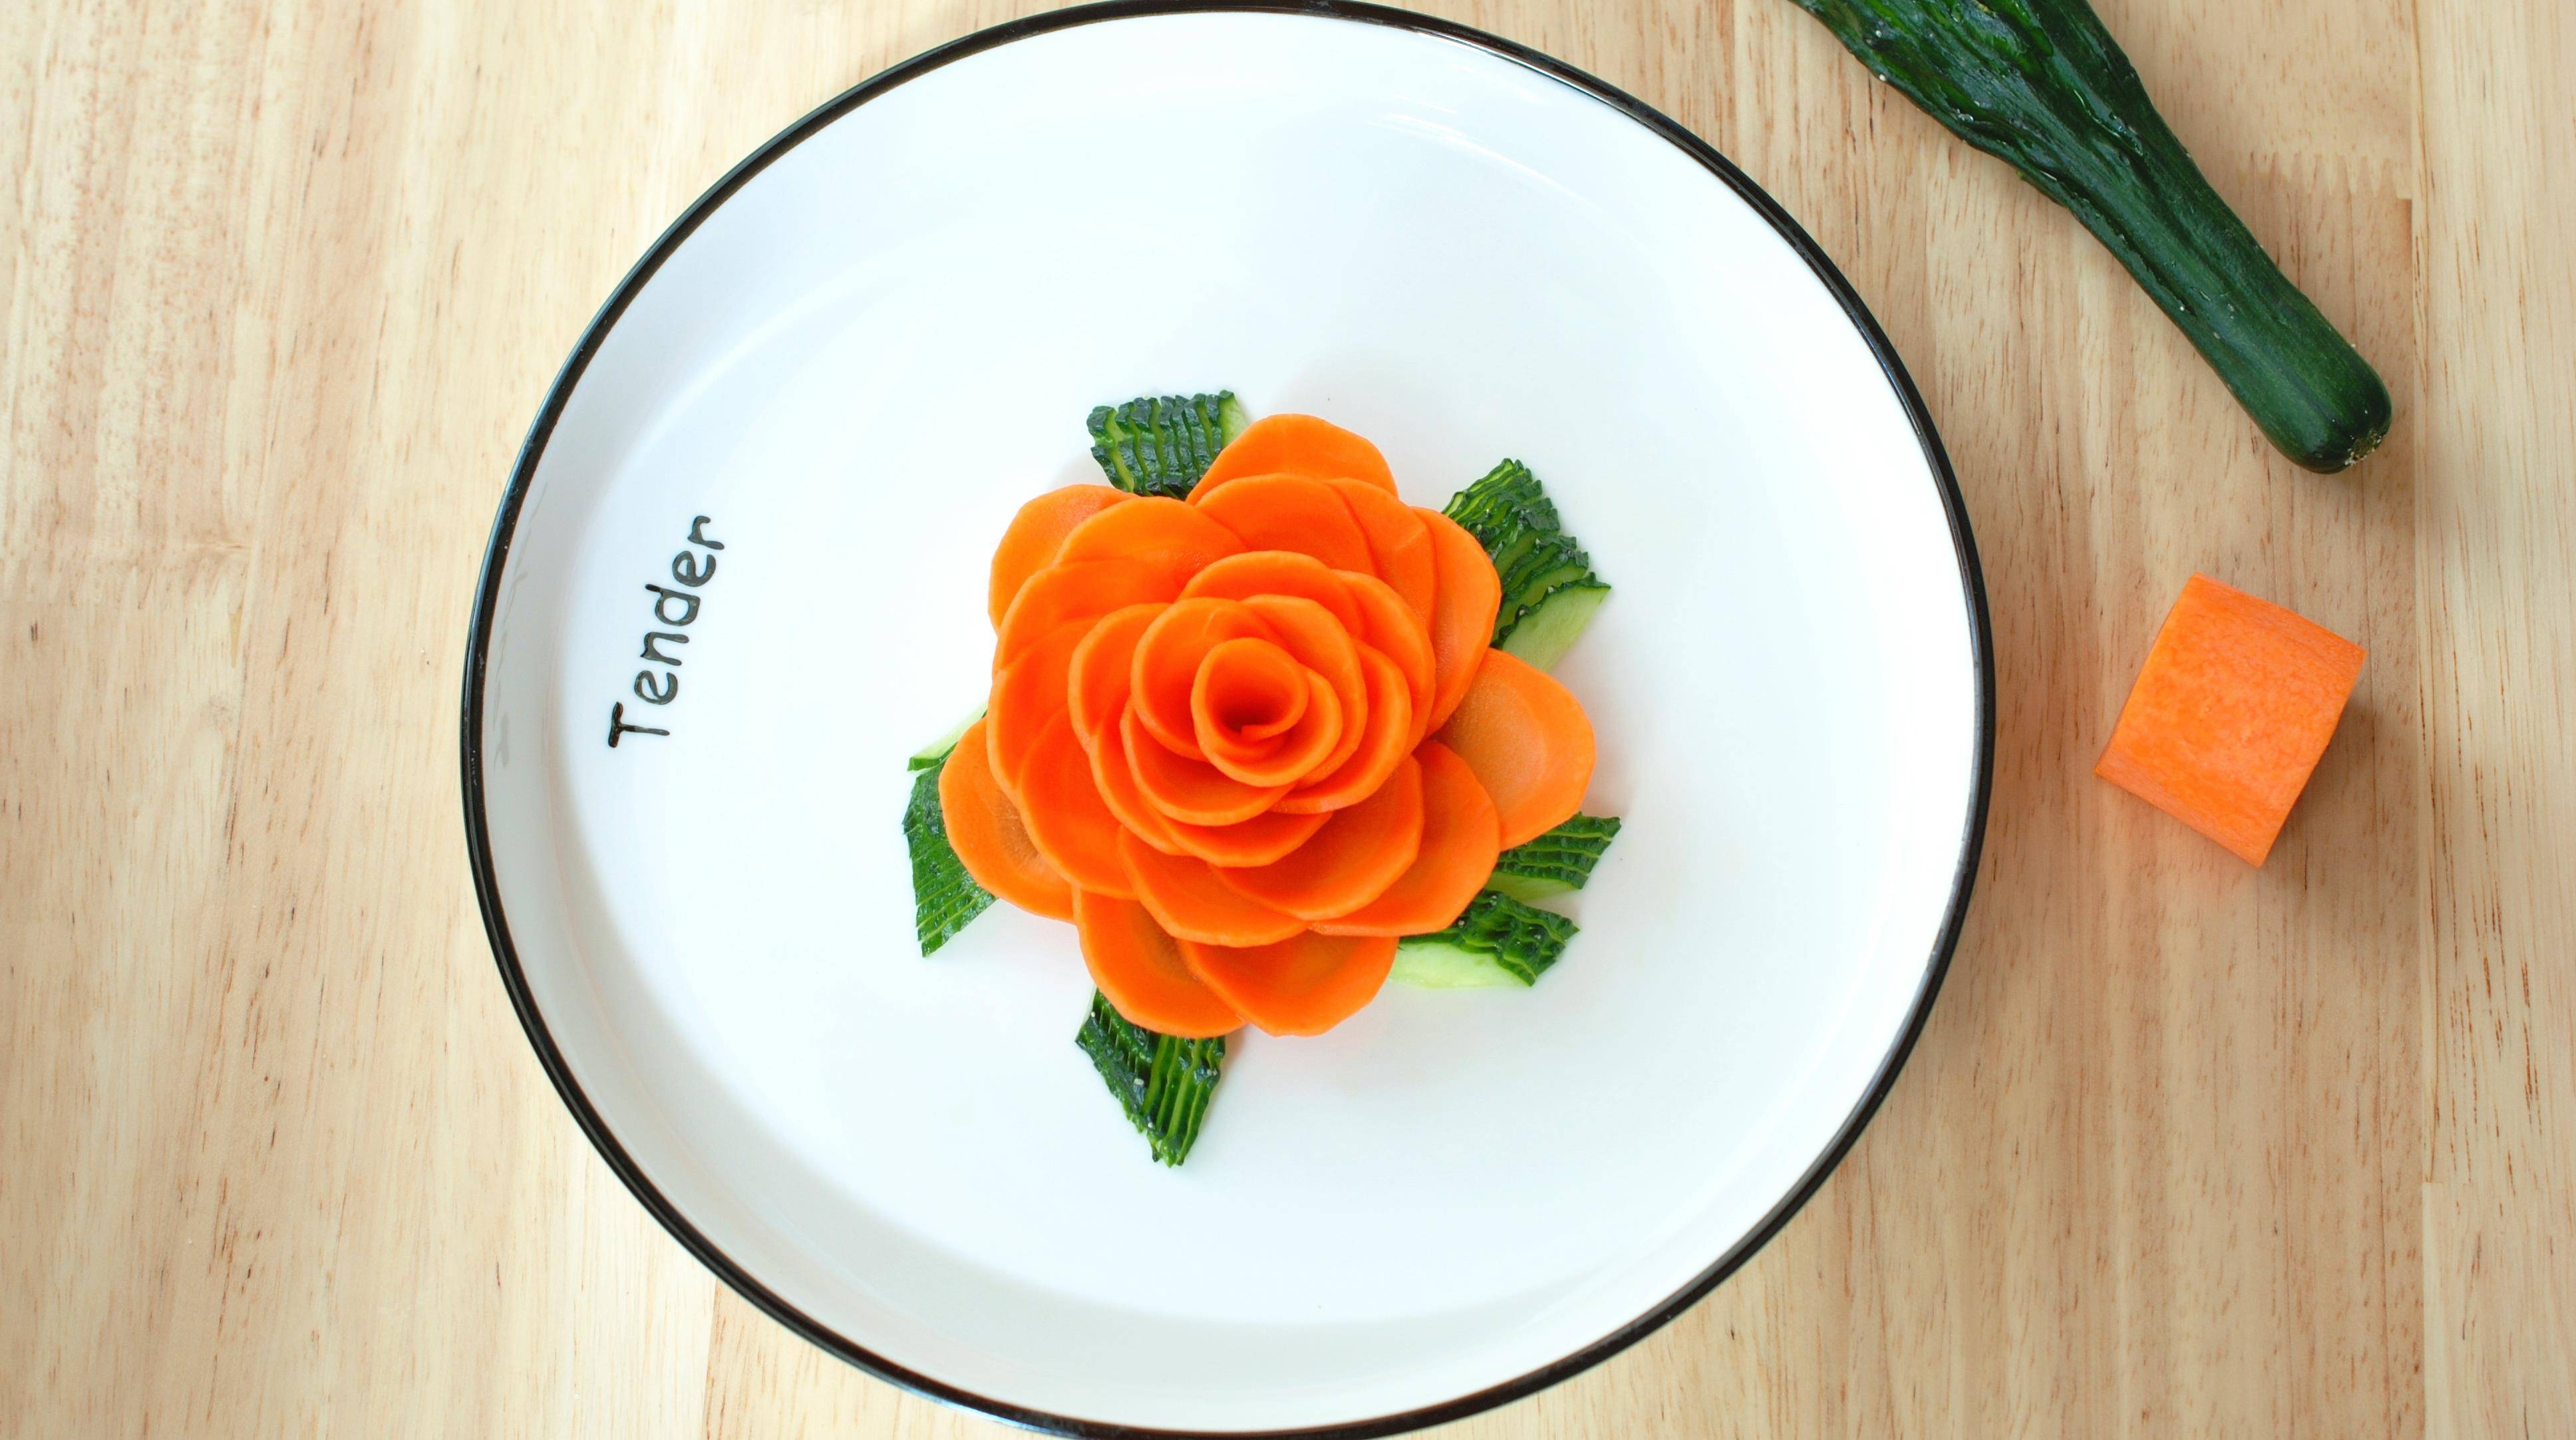 1根黄花1根胡萝卜,教你做一个漂亮的盘子装饰,太简单了!